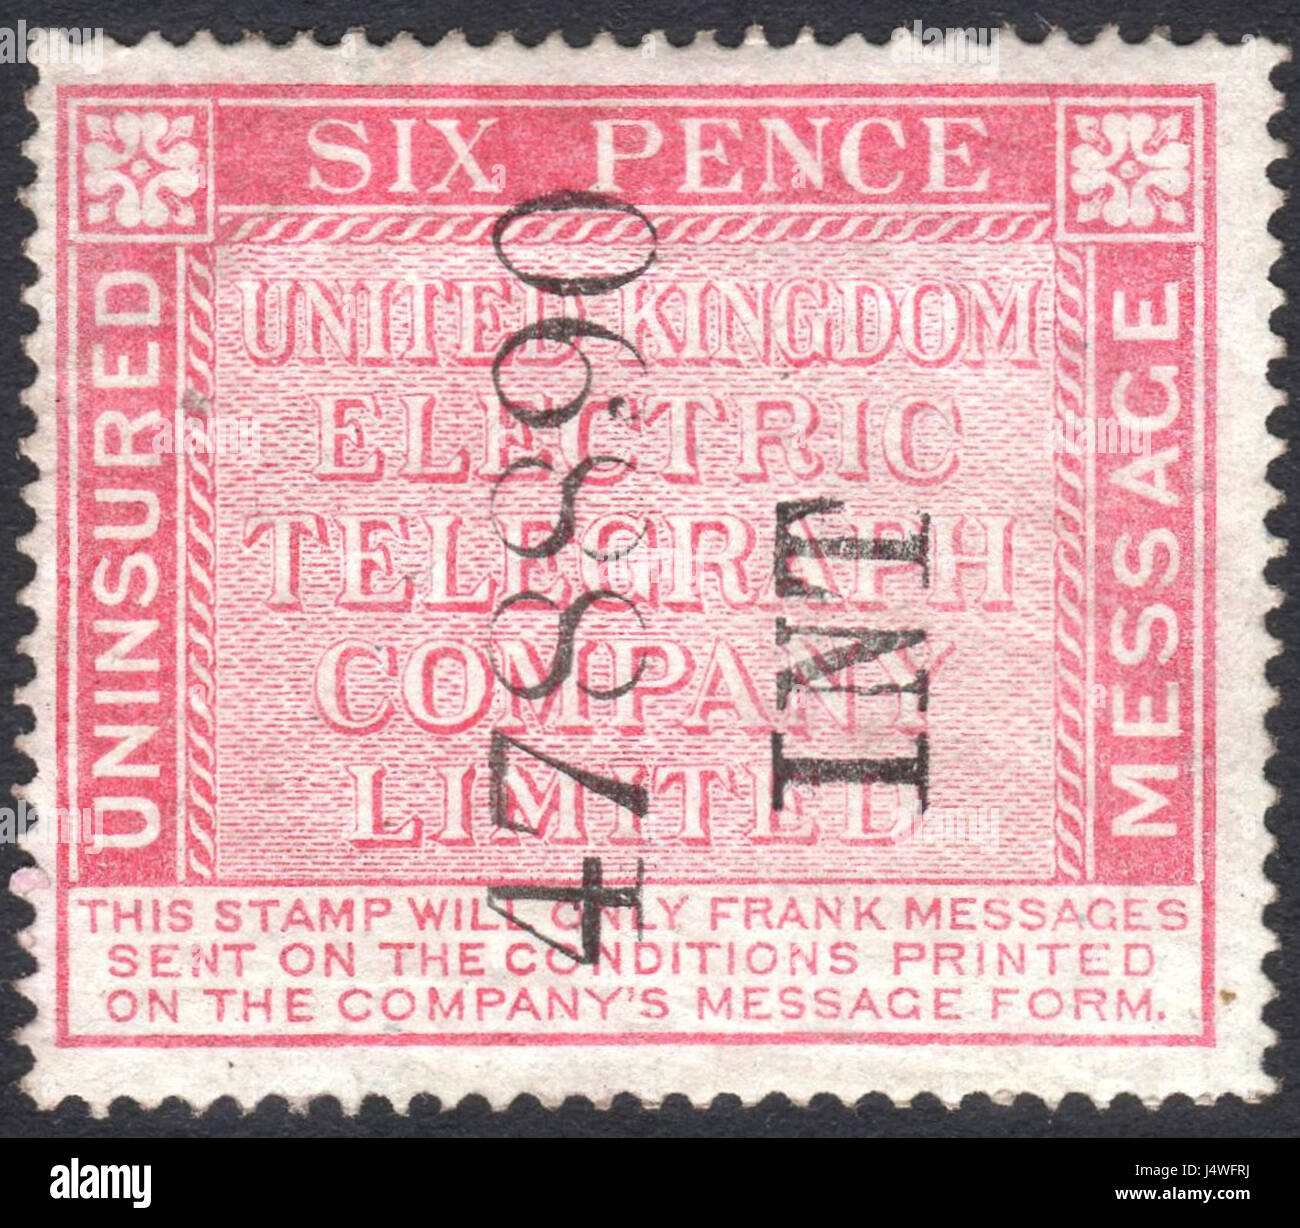 Royaume-uni Electric Telegraph Company Limited 6d message non assurés stamp c. 1865 Banque D'Images